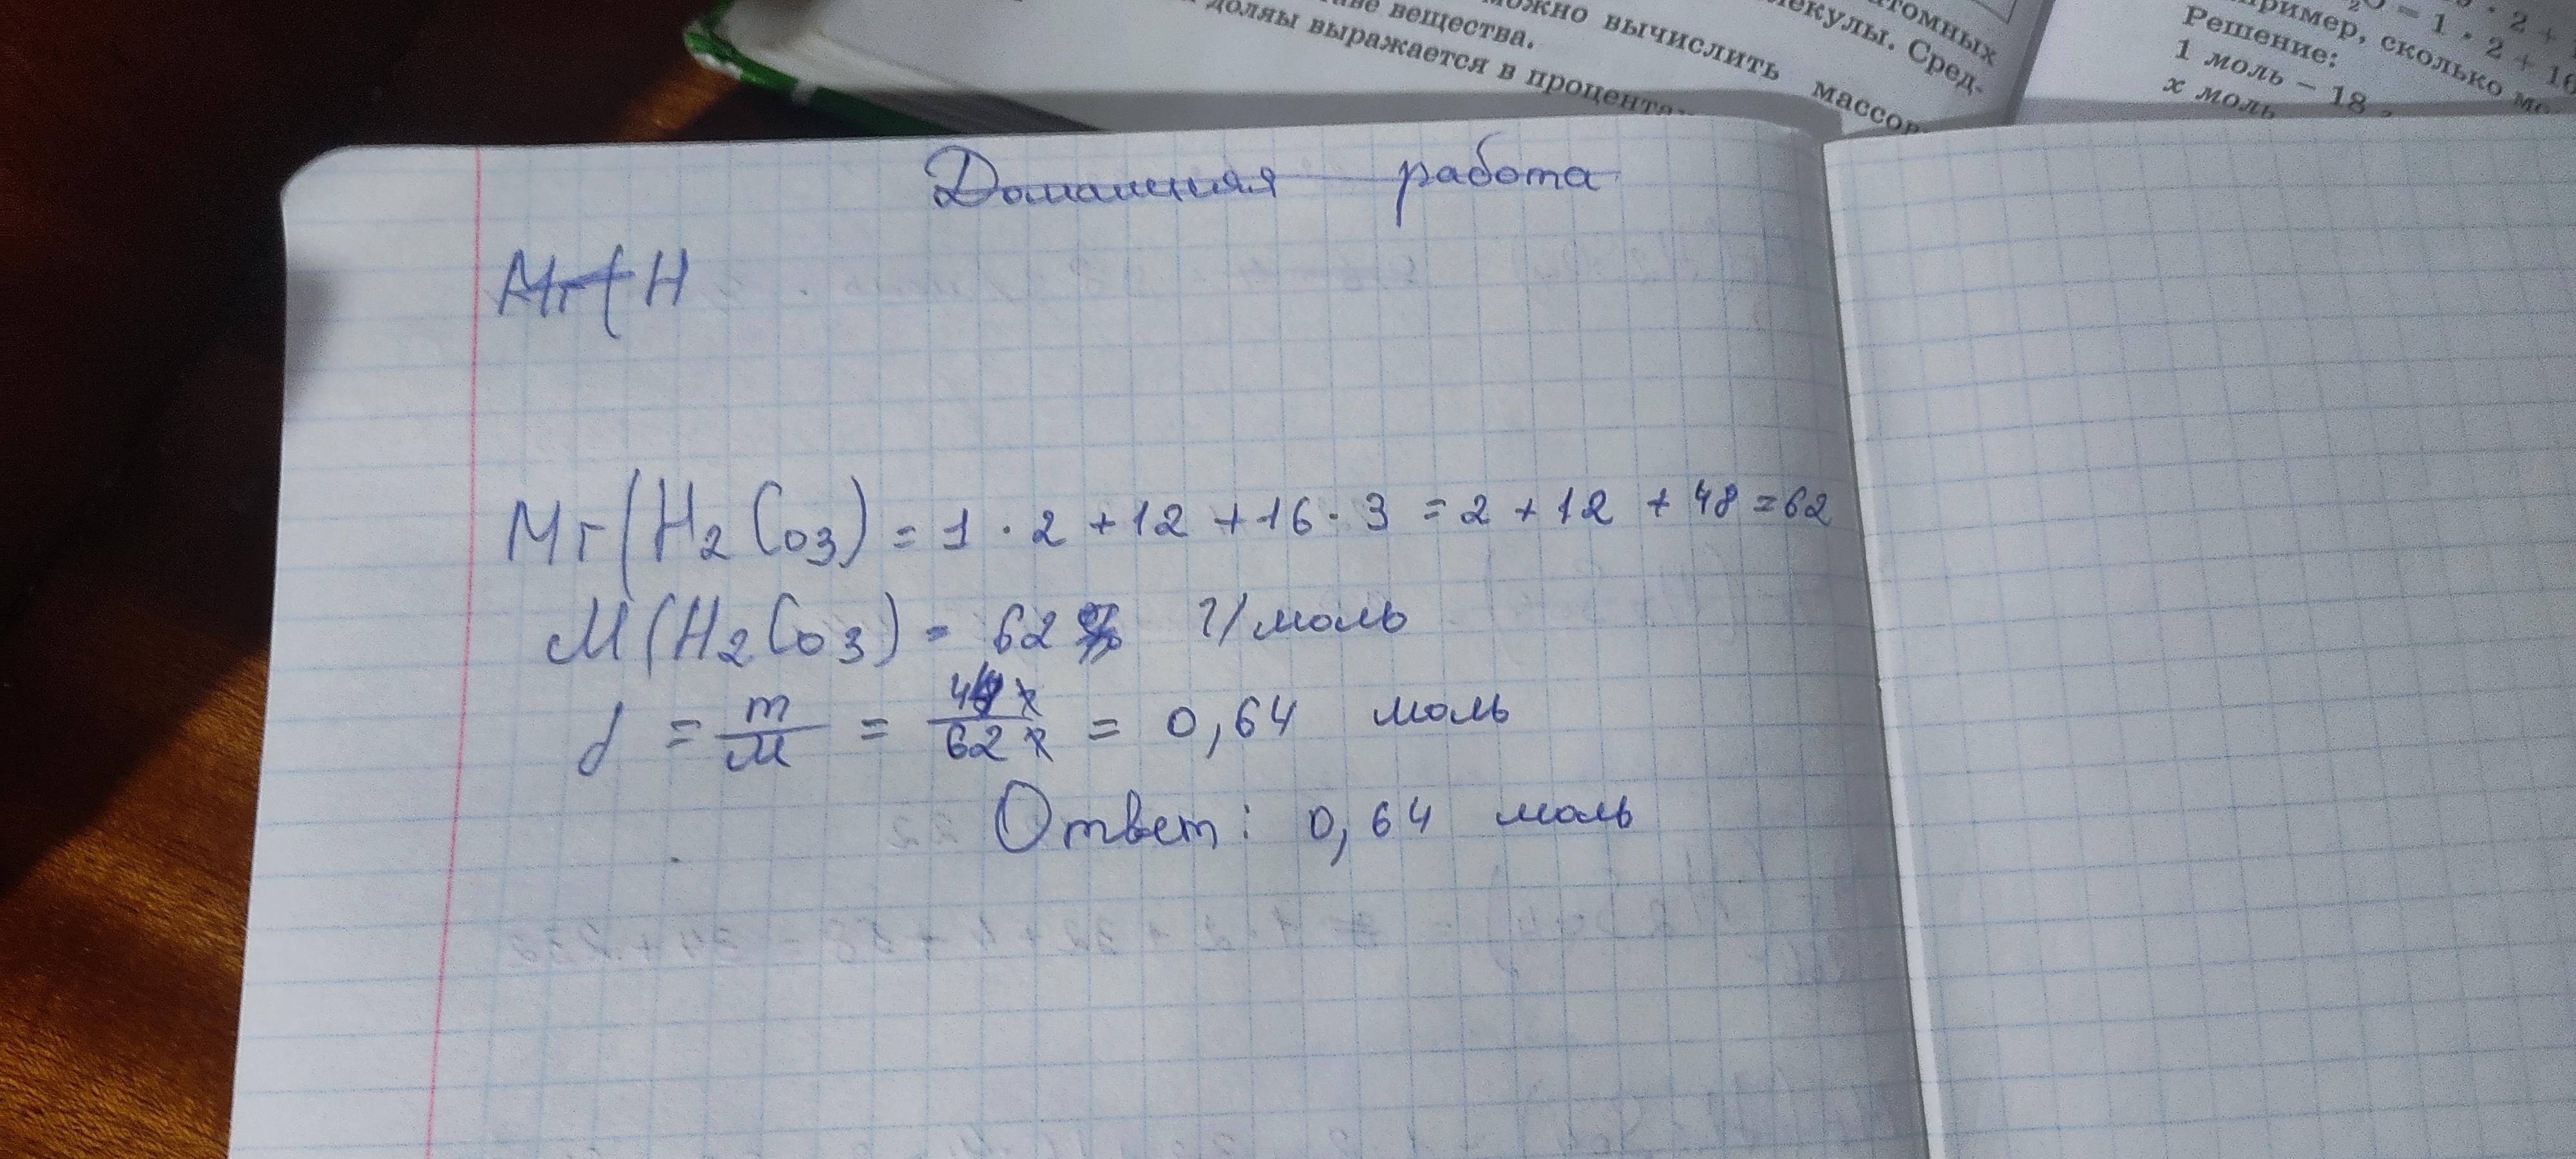 Молярная масса пропана (c3h8), формула и примеры